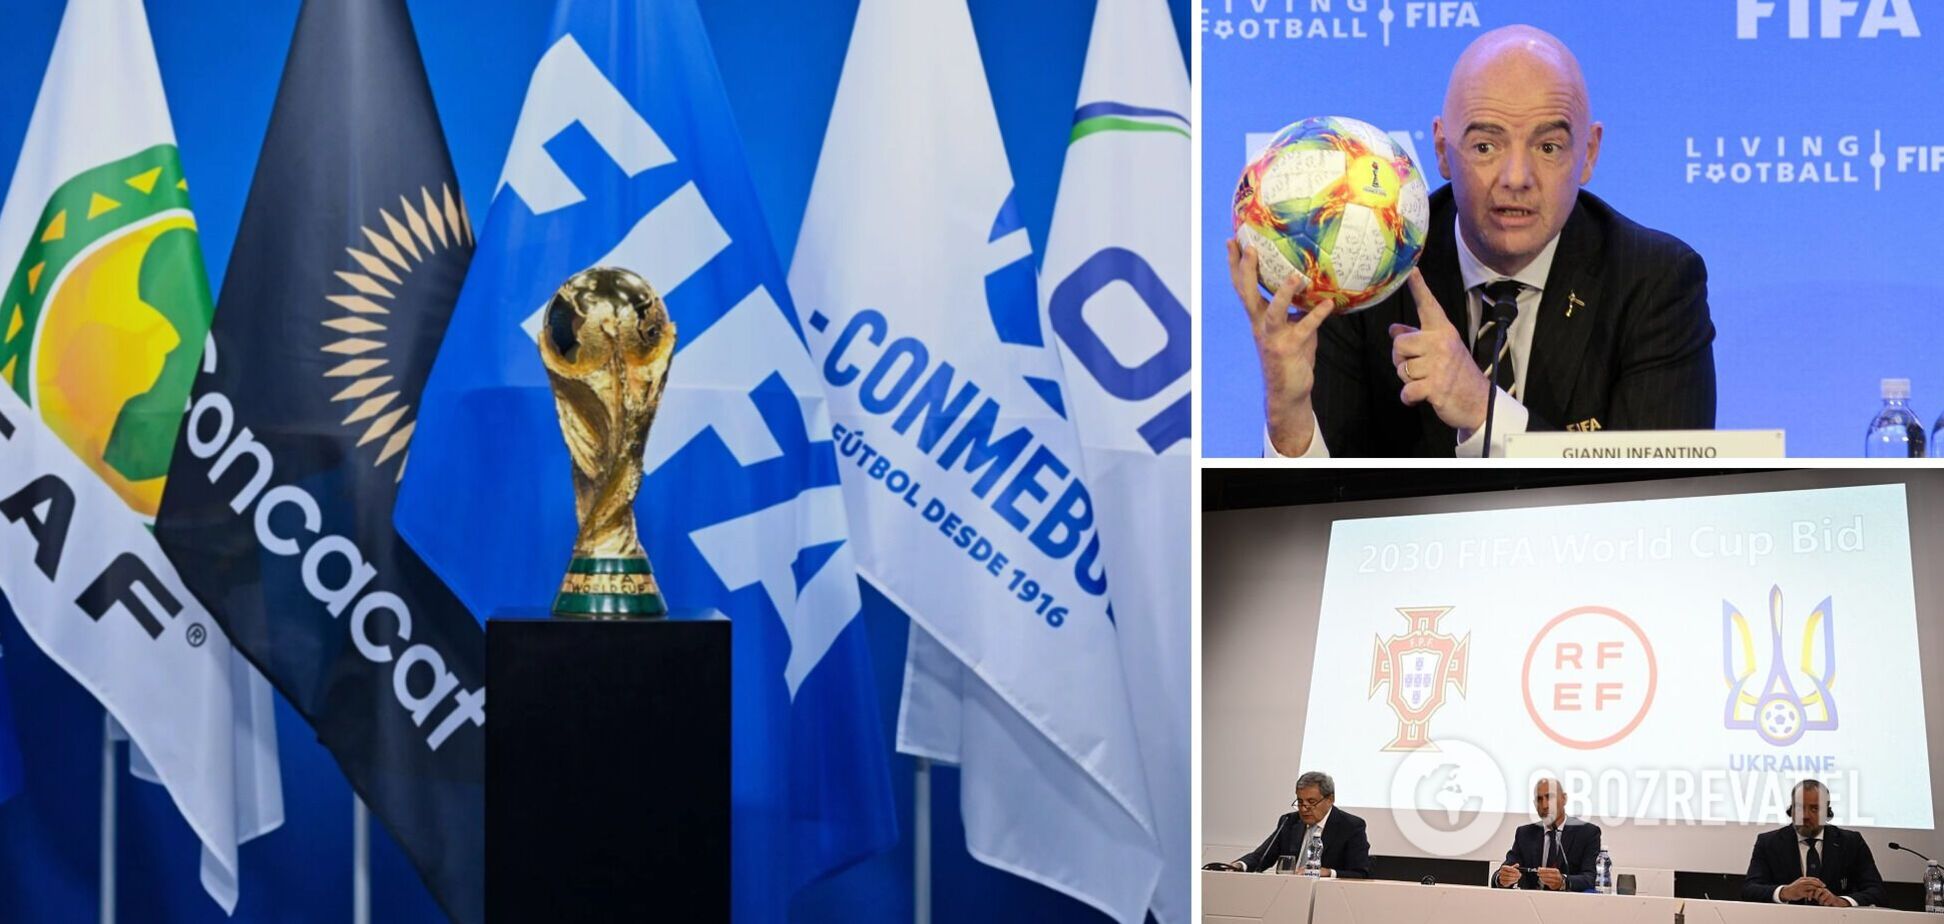 Вместо Украины. Совет ФИФА принял уникальное решение впервые в истории футбола